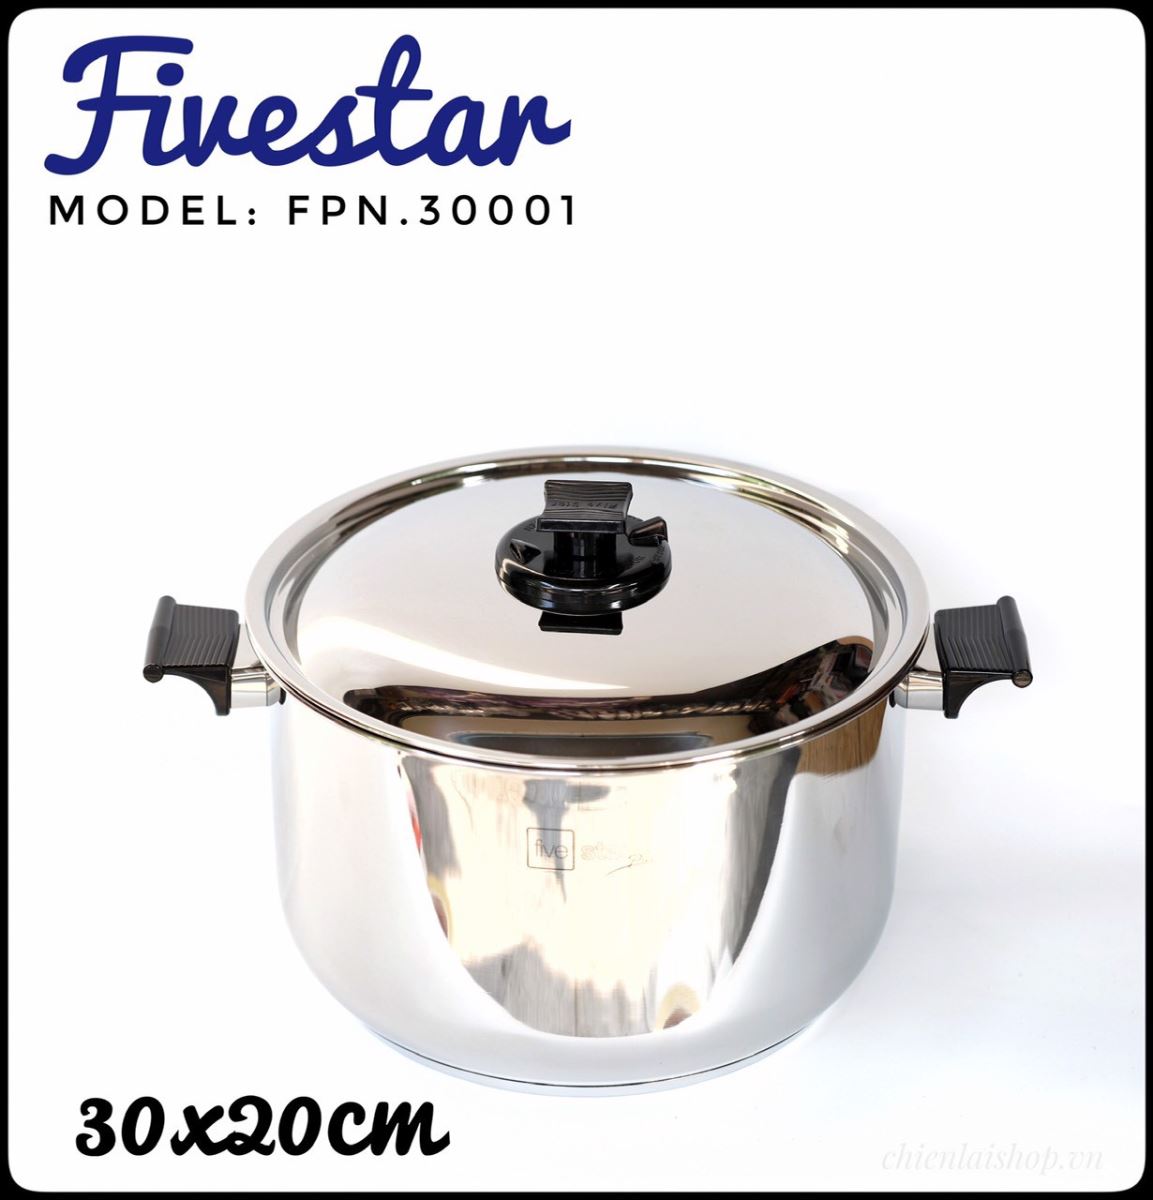 NỒI INOX 304 FIVESTAR FPN.30001 - 30CM